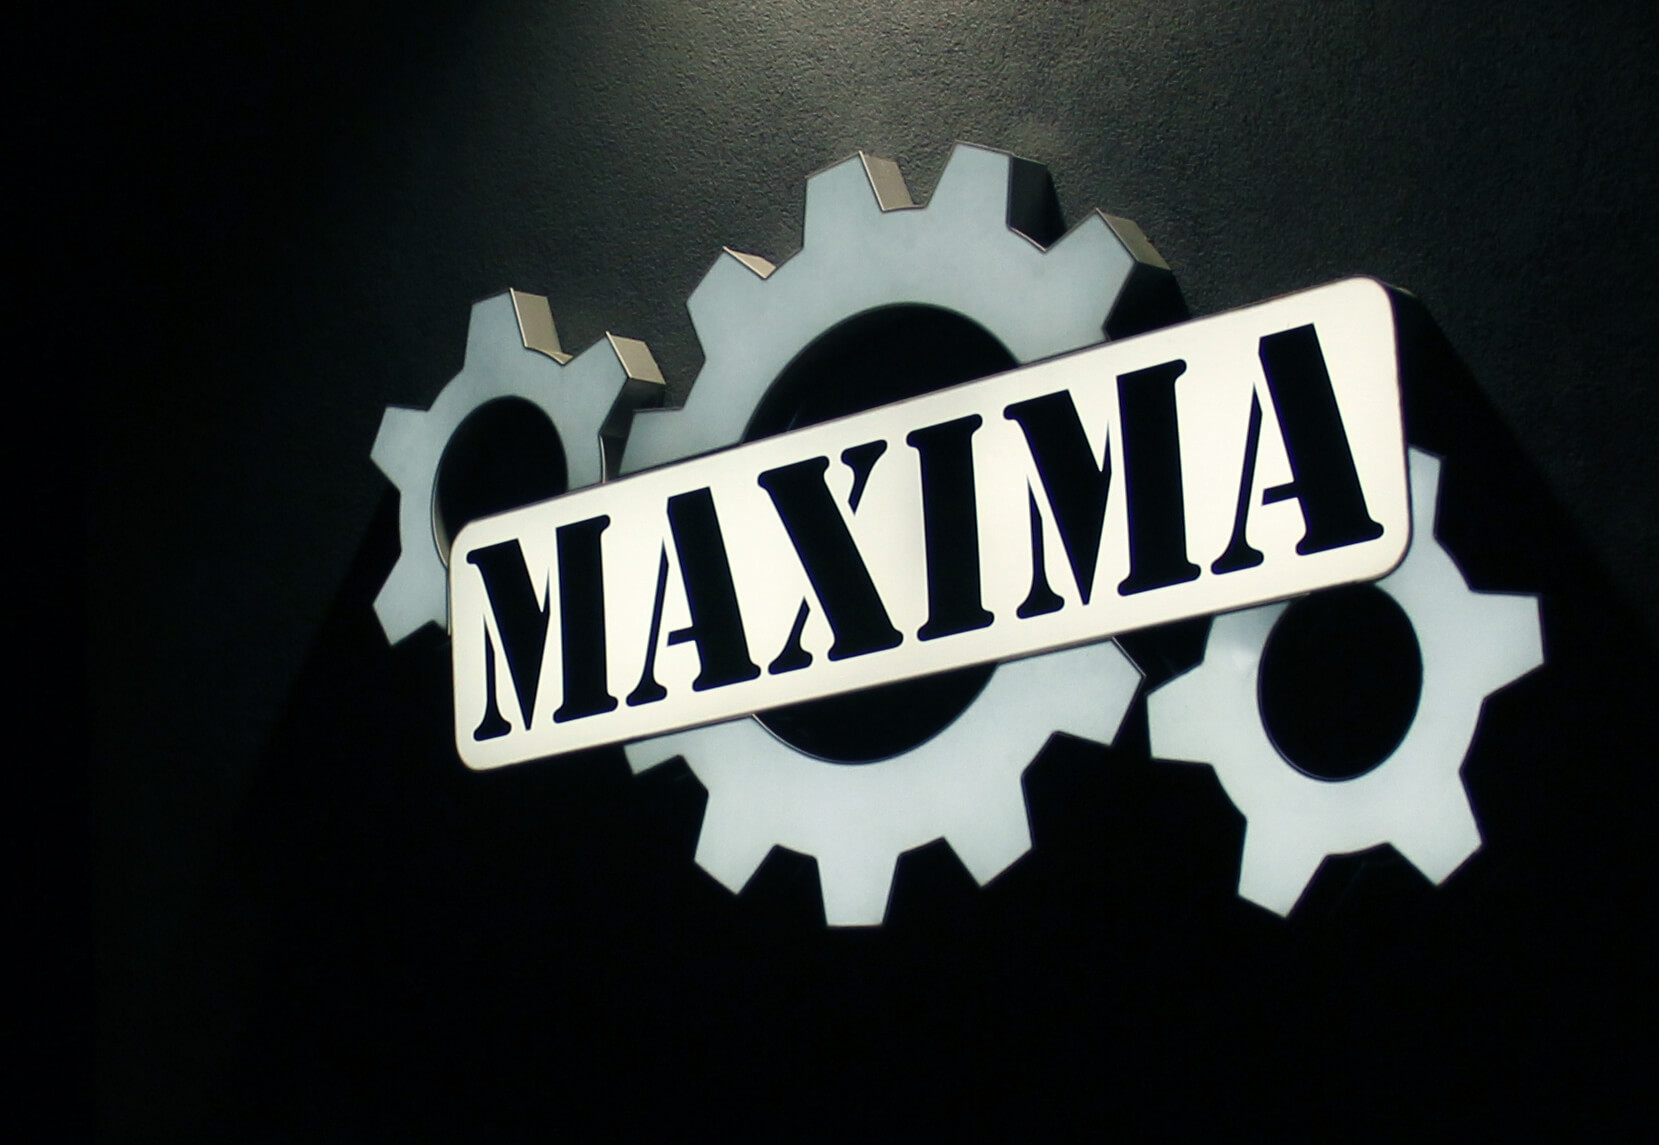 Maxima - Maxima - led light box on the wall with company logo, made of plexiglass